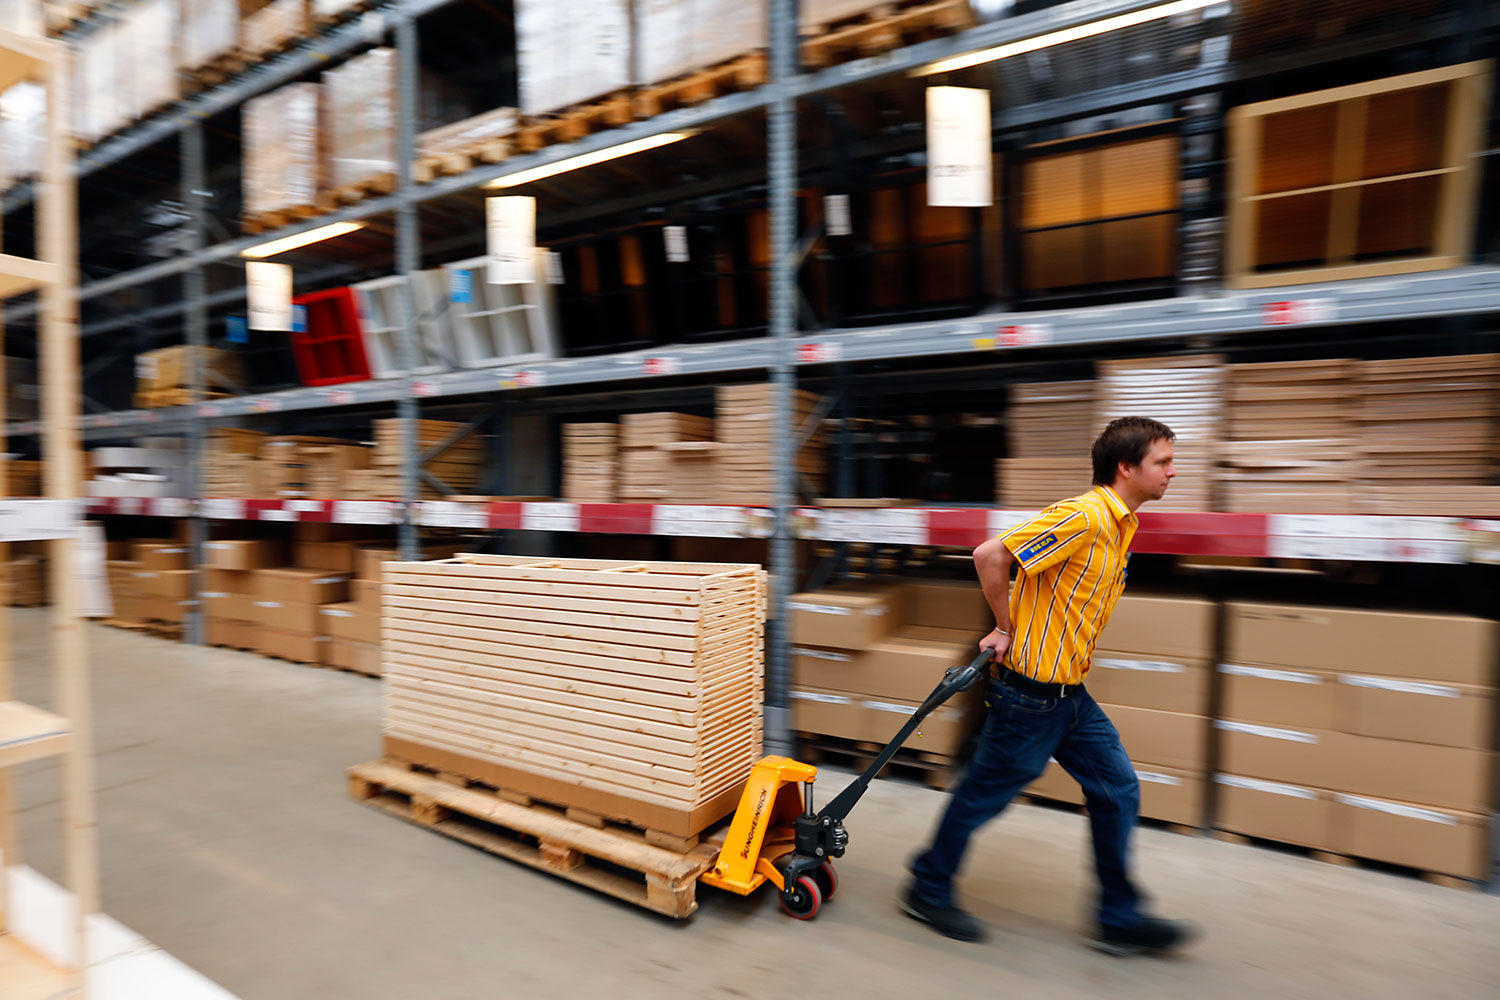 Ikea se queda sin encimeras, armarios y accesorios por la crisis de suministros